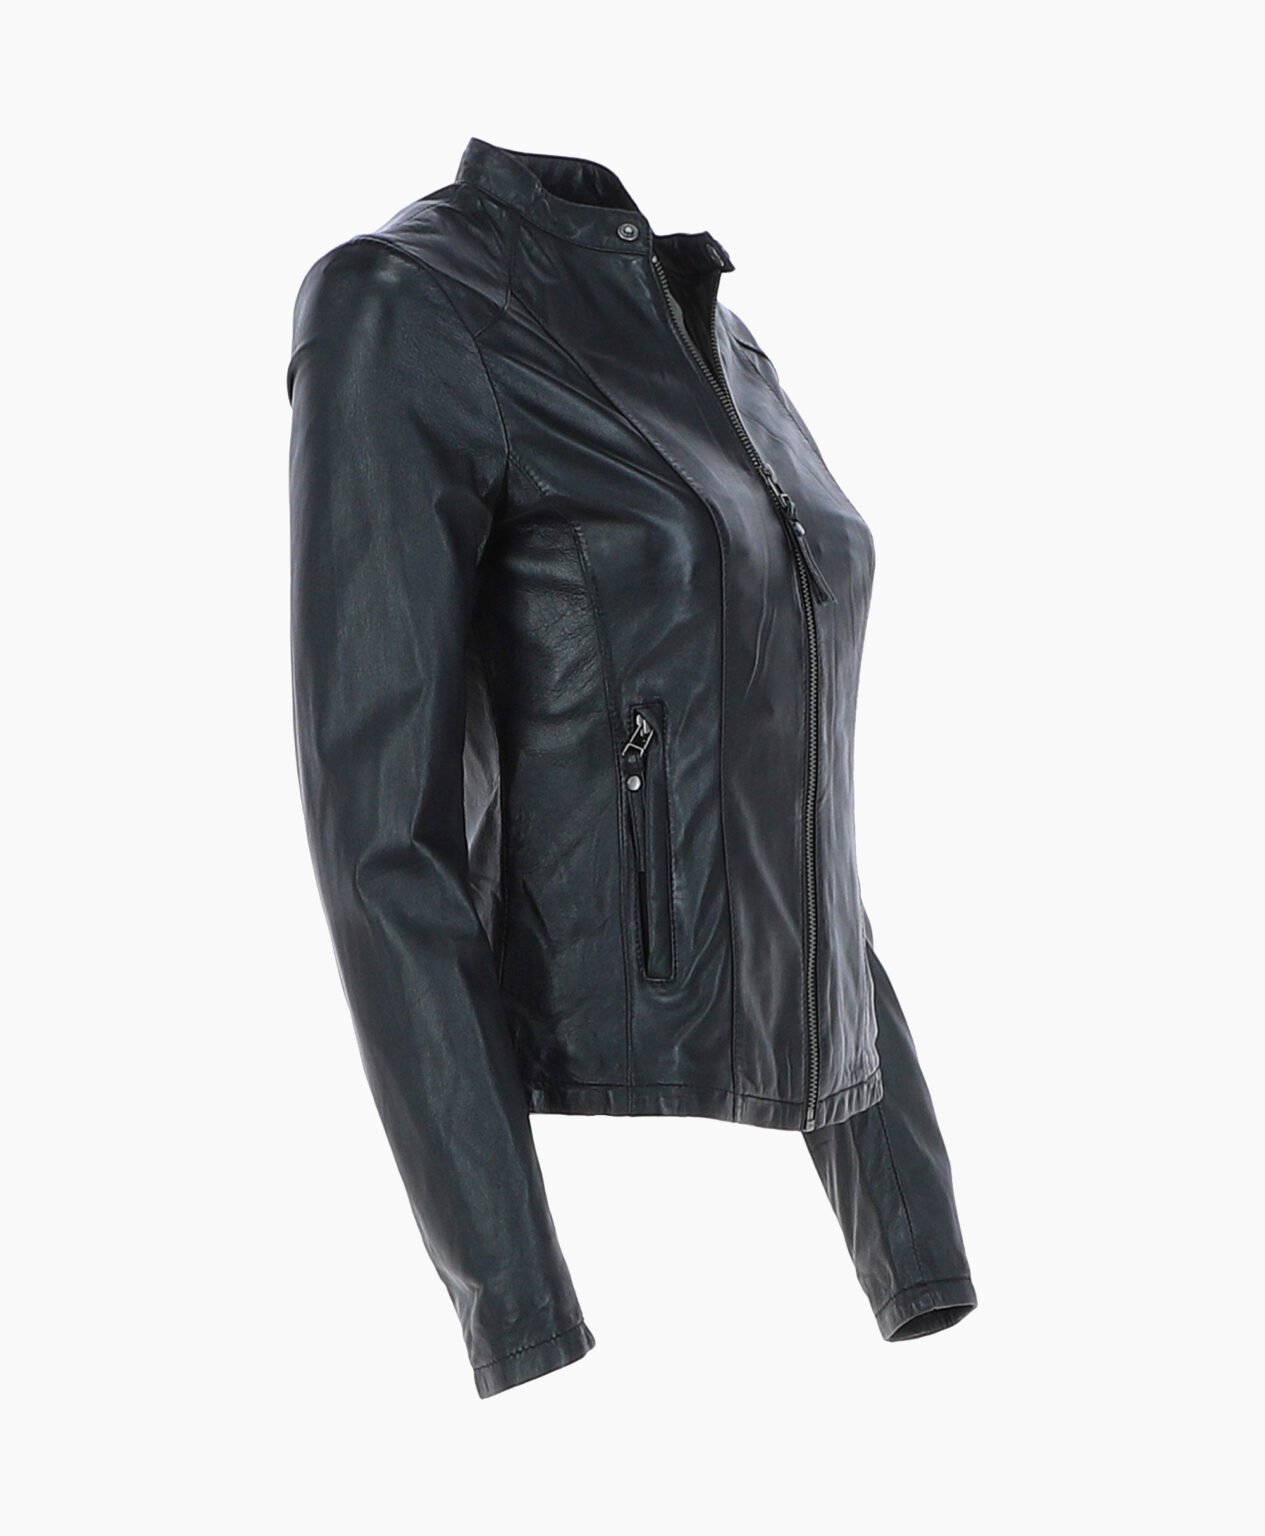 vogue-jacket-leather-biker-jacket-black-cicero-image203